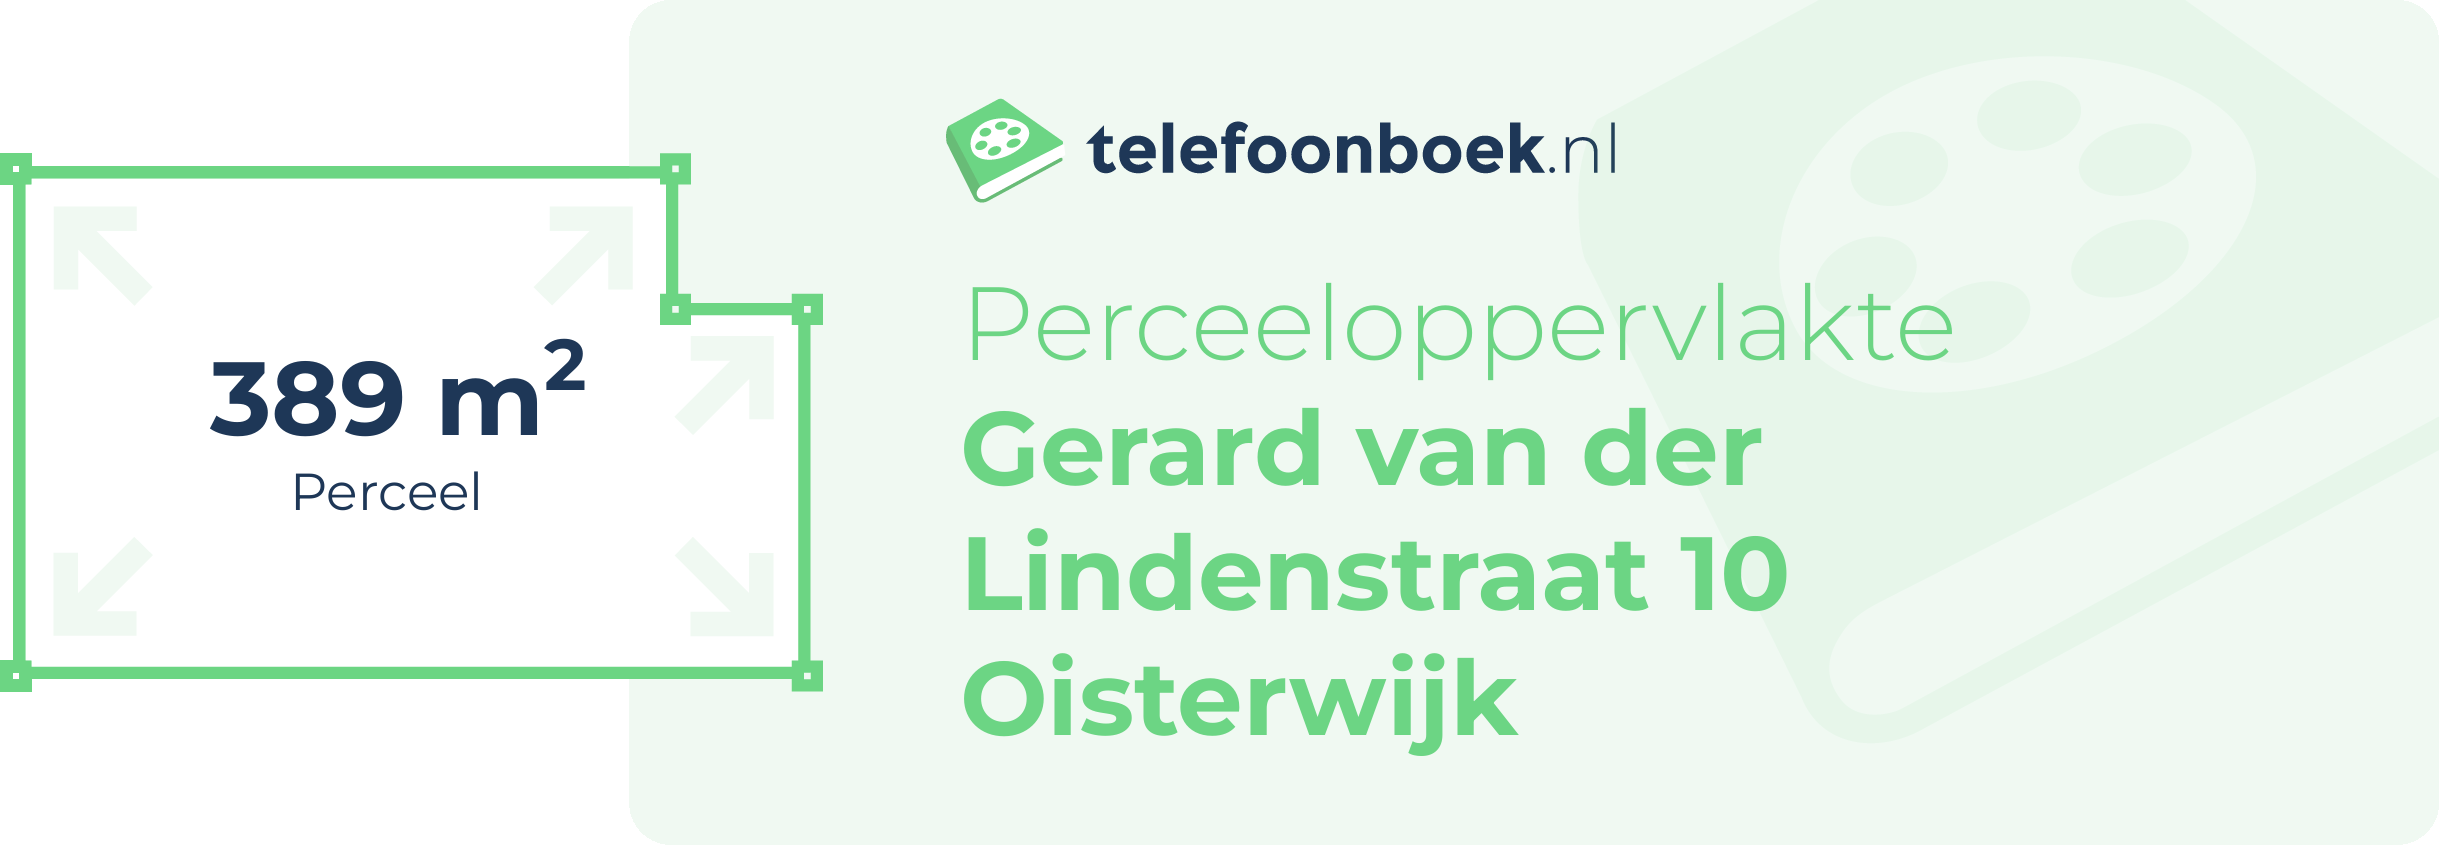 Perceeloppervlakte Gerard Van Der Lindenstraat 10 Oisterwijk